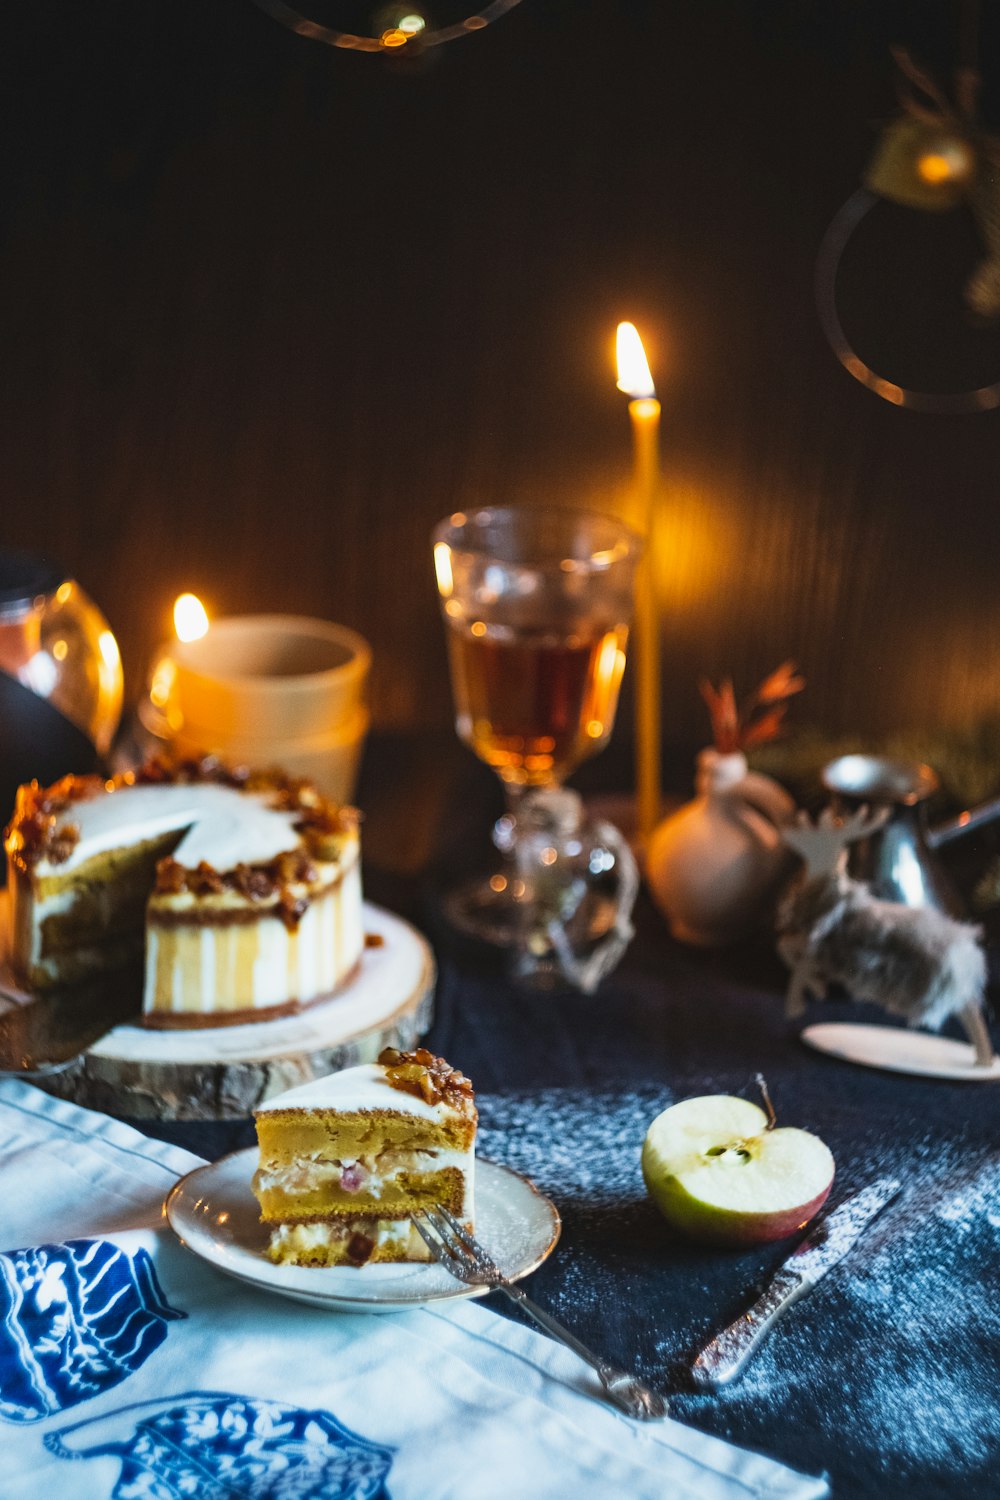 chandelier allumé près d’un verre de vin blanc, d’un gâteau tranché, d’une pomme et d’un couteau